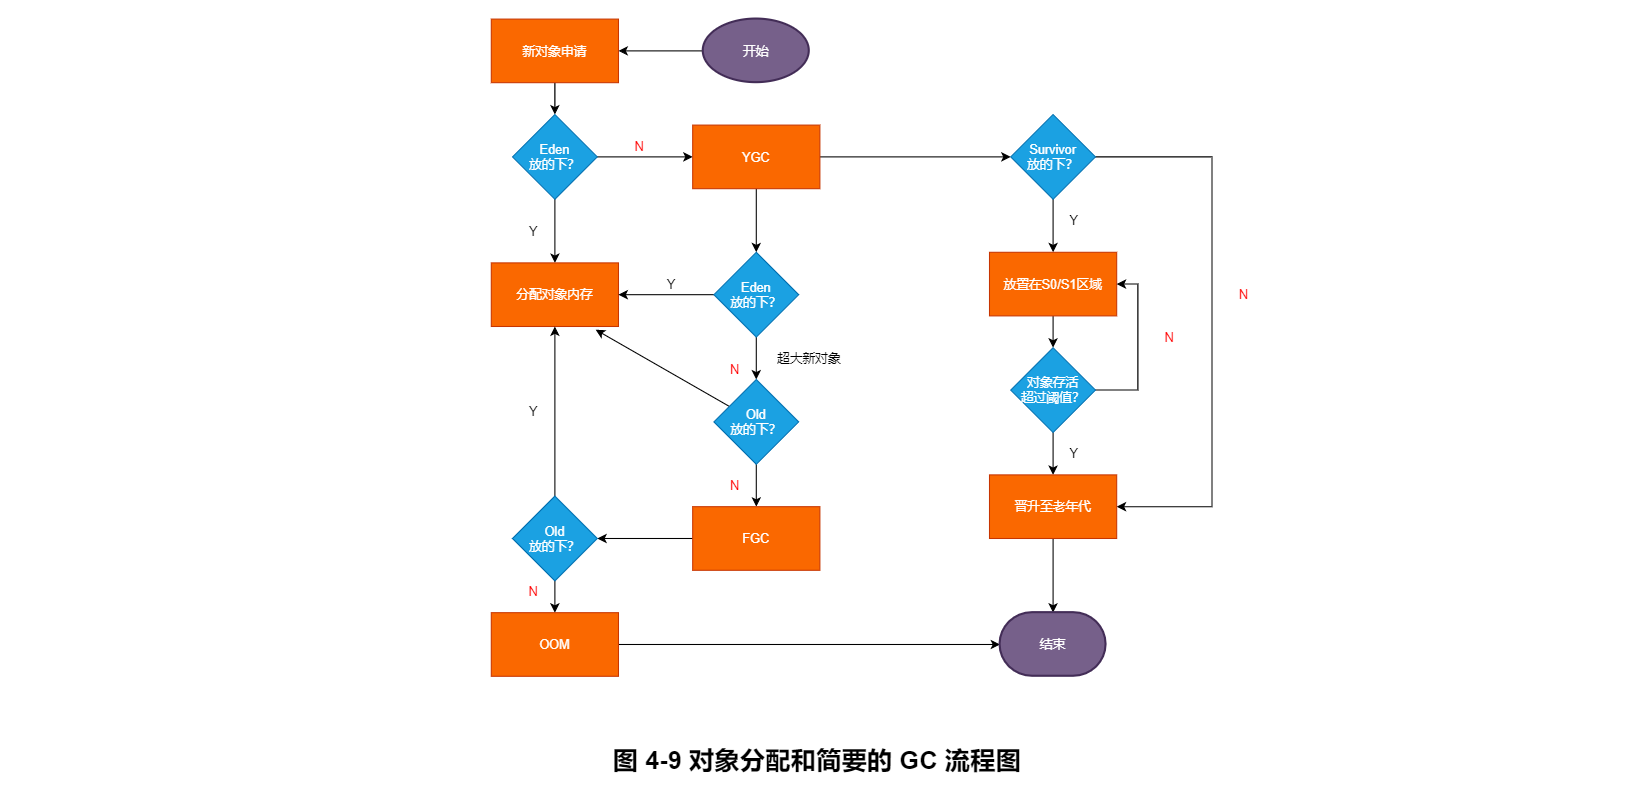 图 4-9 对象分配和简要的 GC 流程图